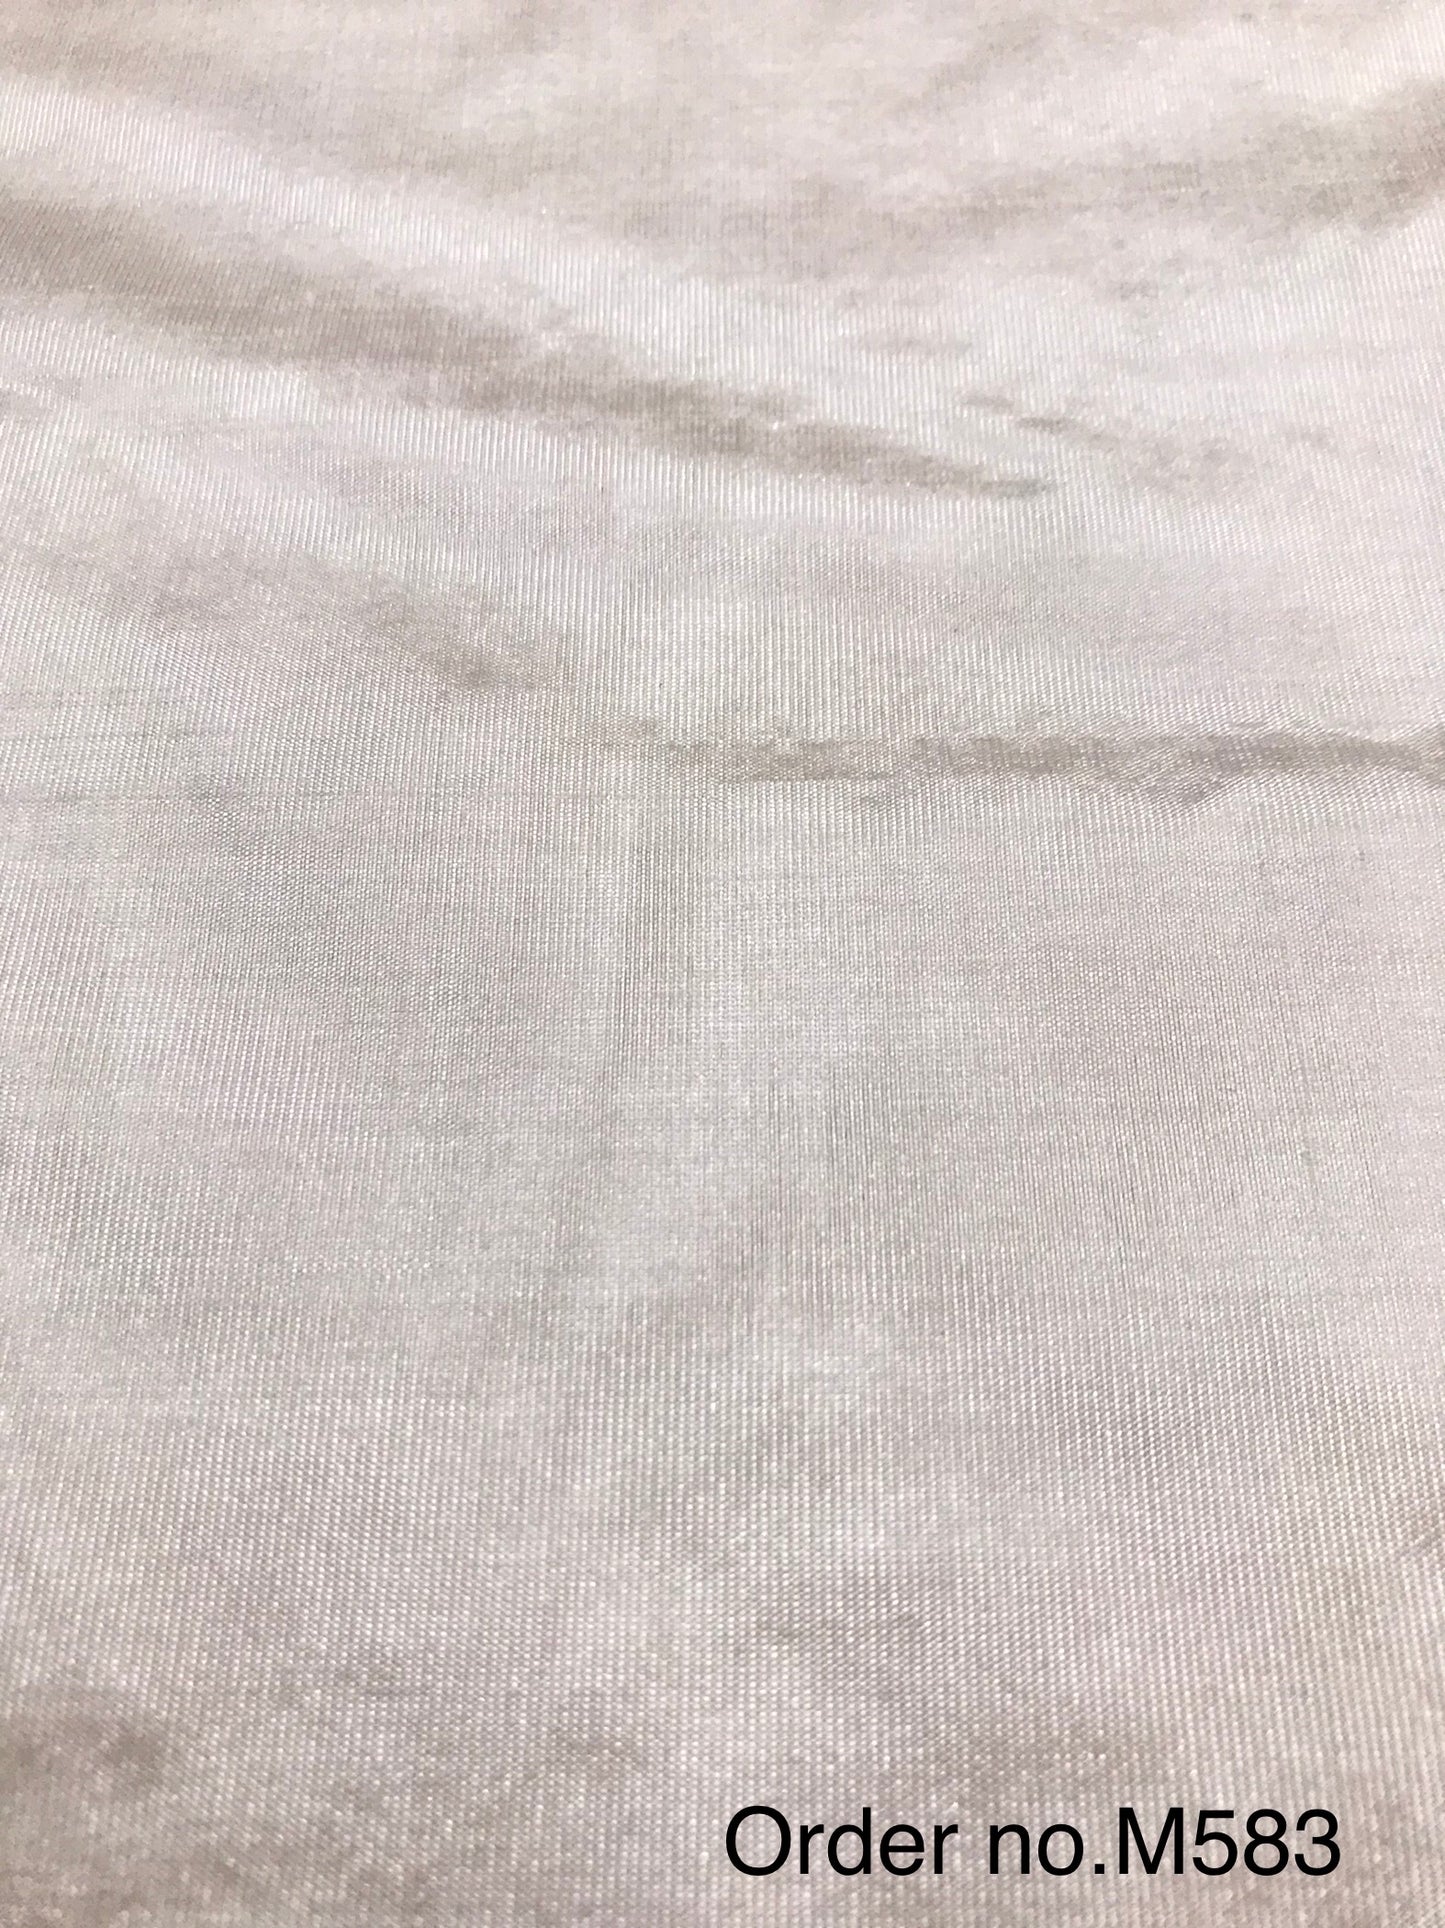 Kora silk 45gm width 44”